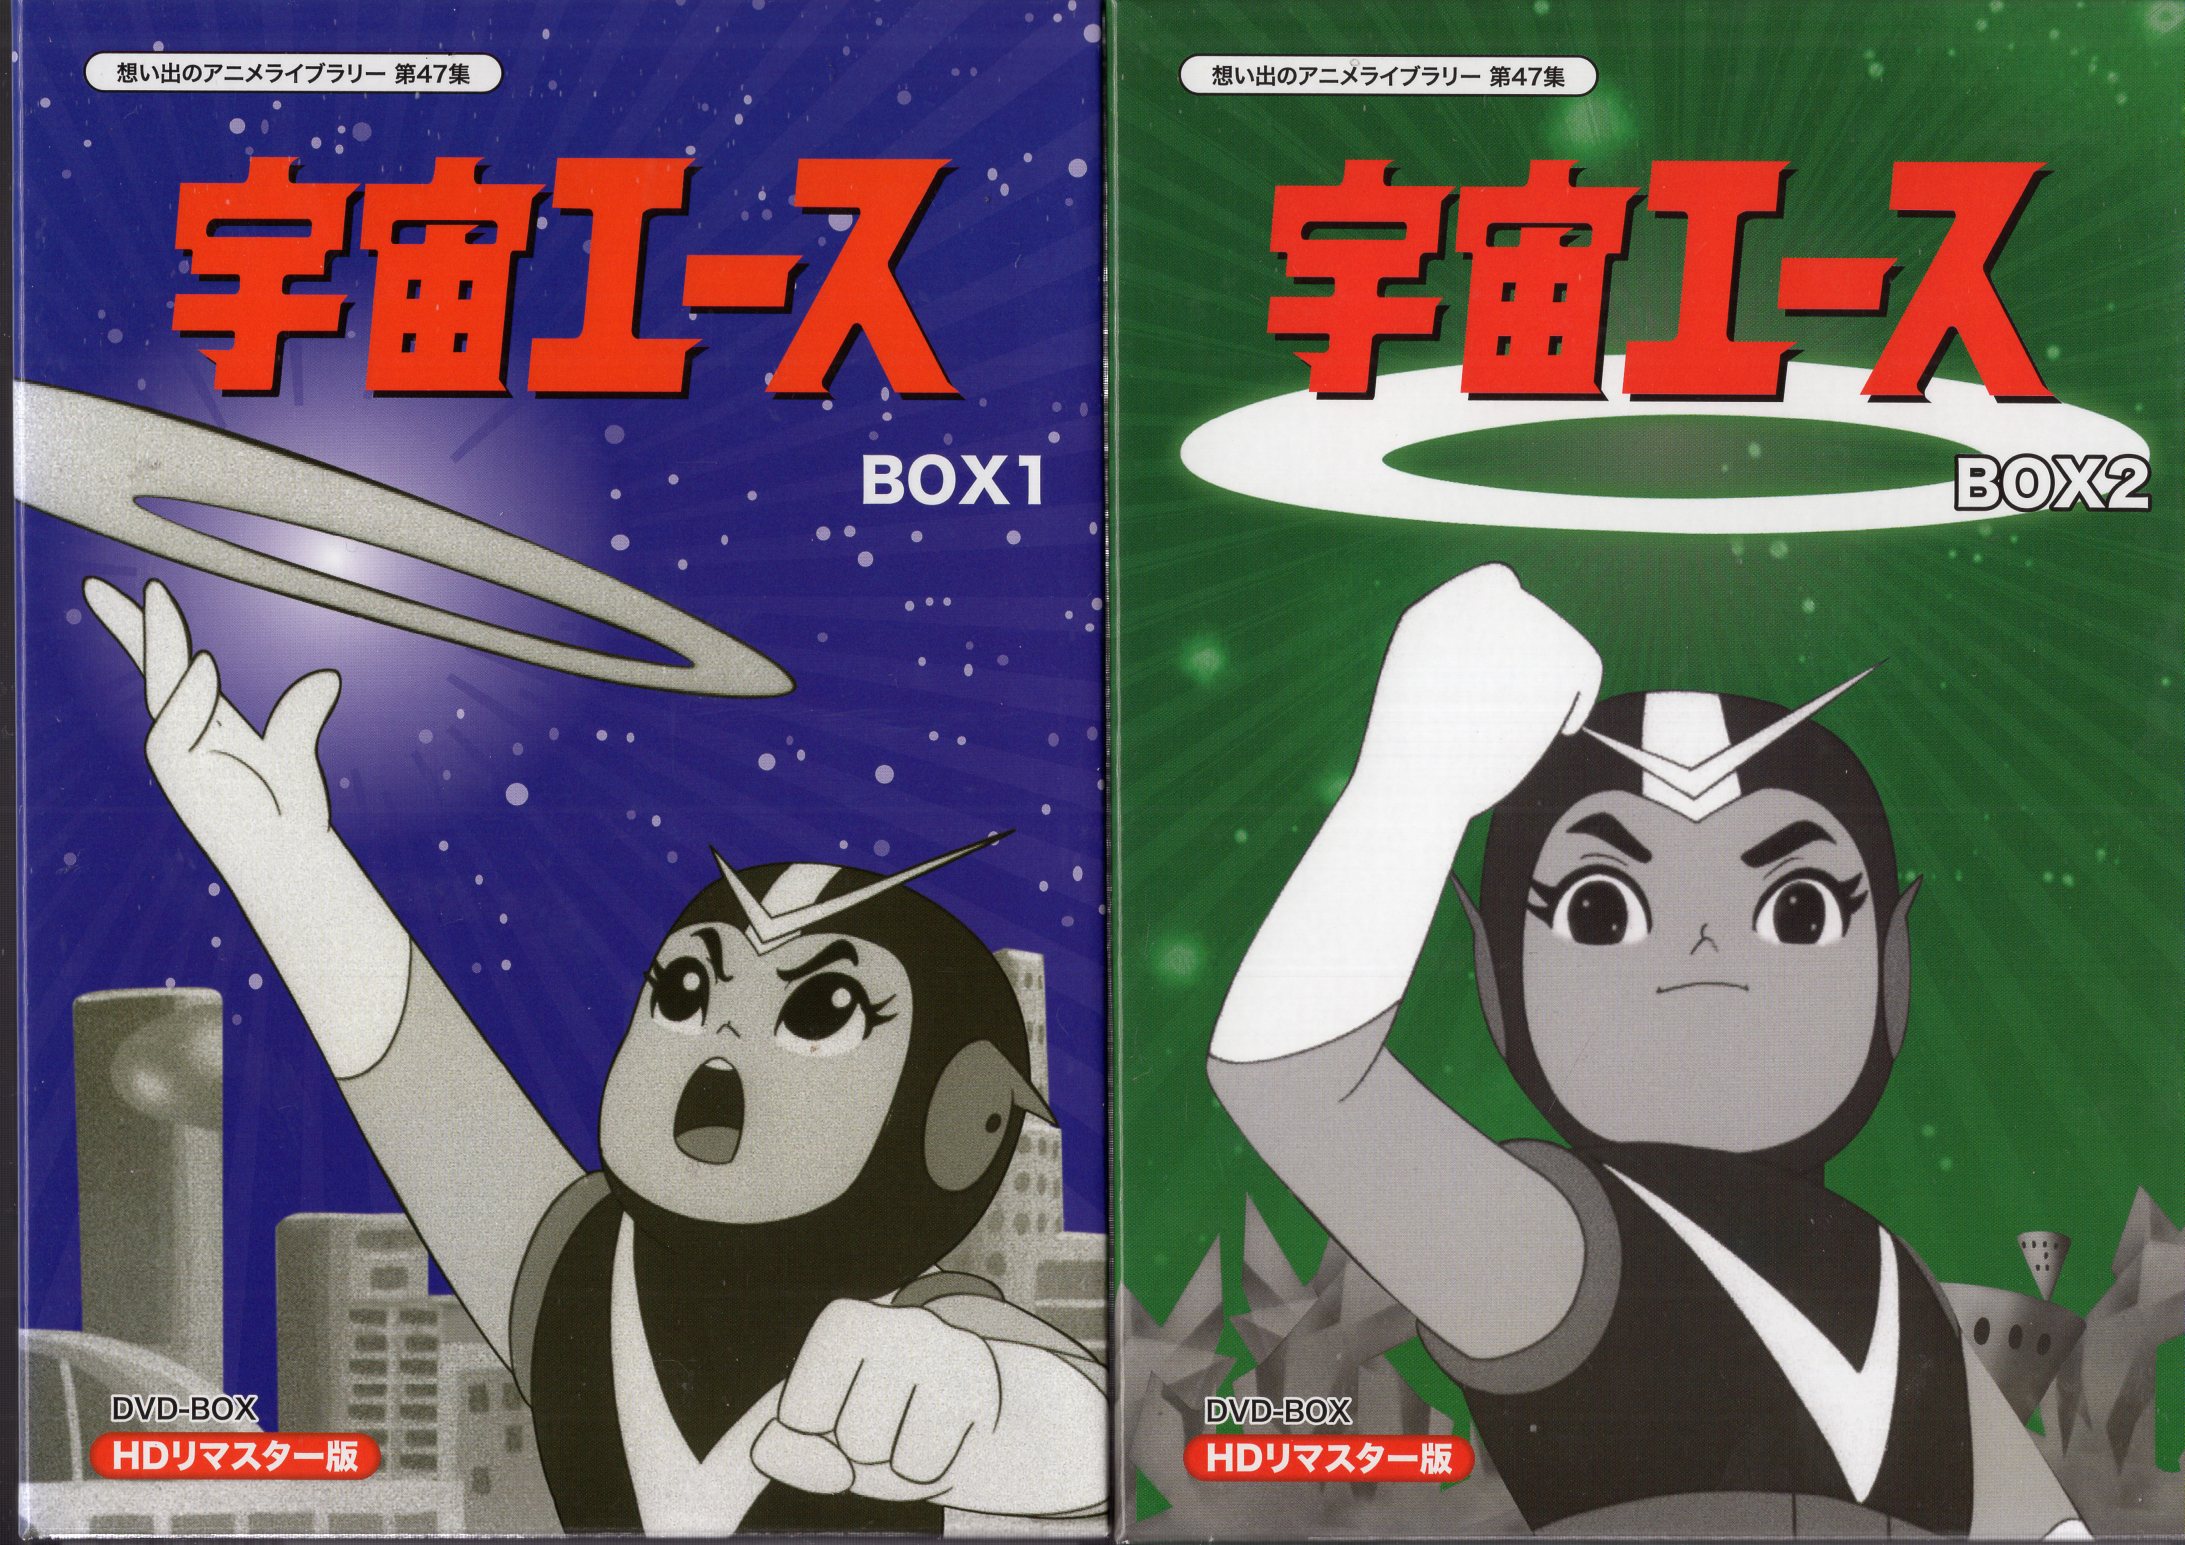 ベストフィールド アニメdvd 宇宙エース Dvd Box Hdリマスター版 想い出のアニメライブラリー 全2巻 セット まんだらけ Mandarake